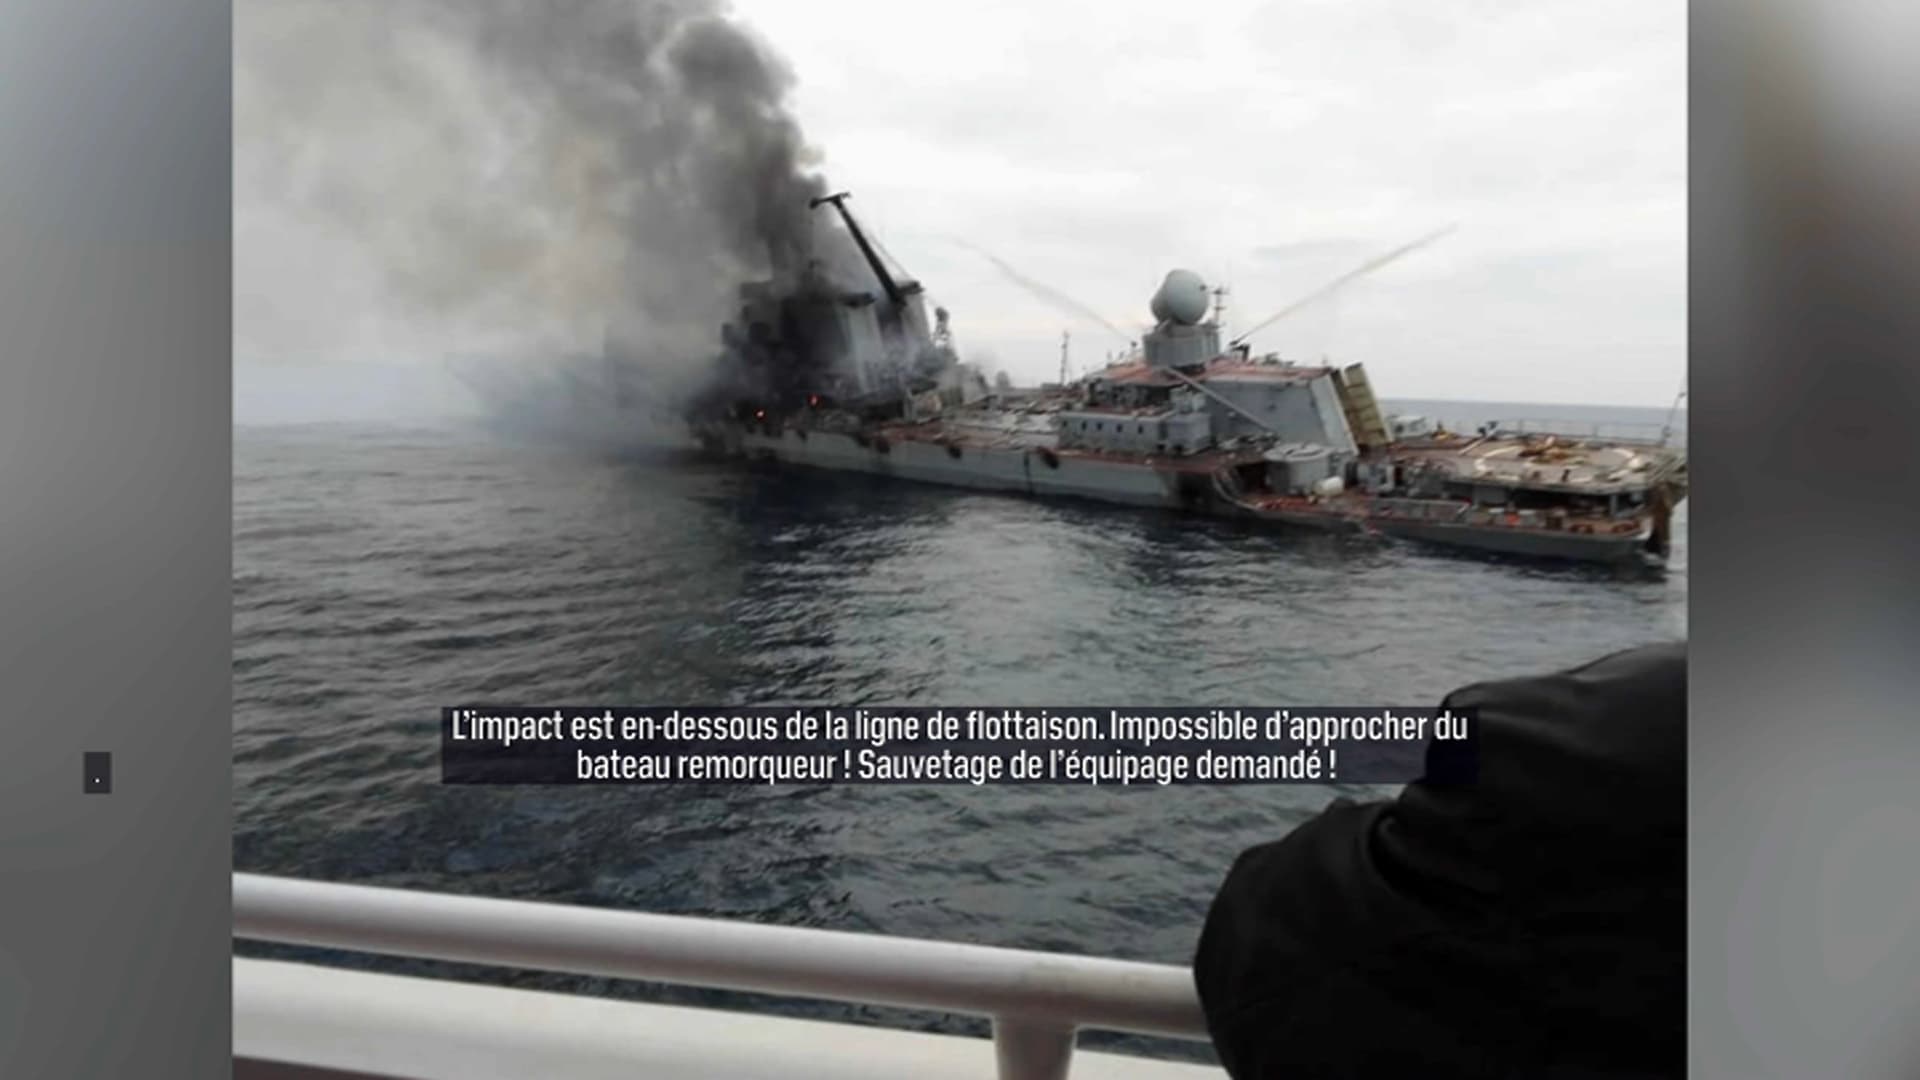 Poutine me constipe... - Page 3 Le-croiseur-russe-Moskva-photographie-en-flammes-avant-de-couleur-dans-la-mer-Noire-jeudi-14-avril-2022-1413850